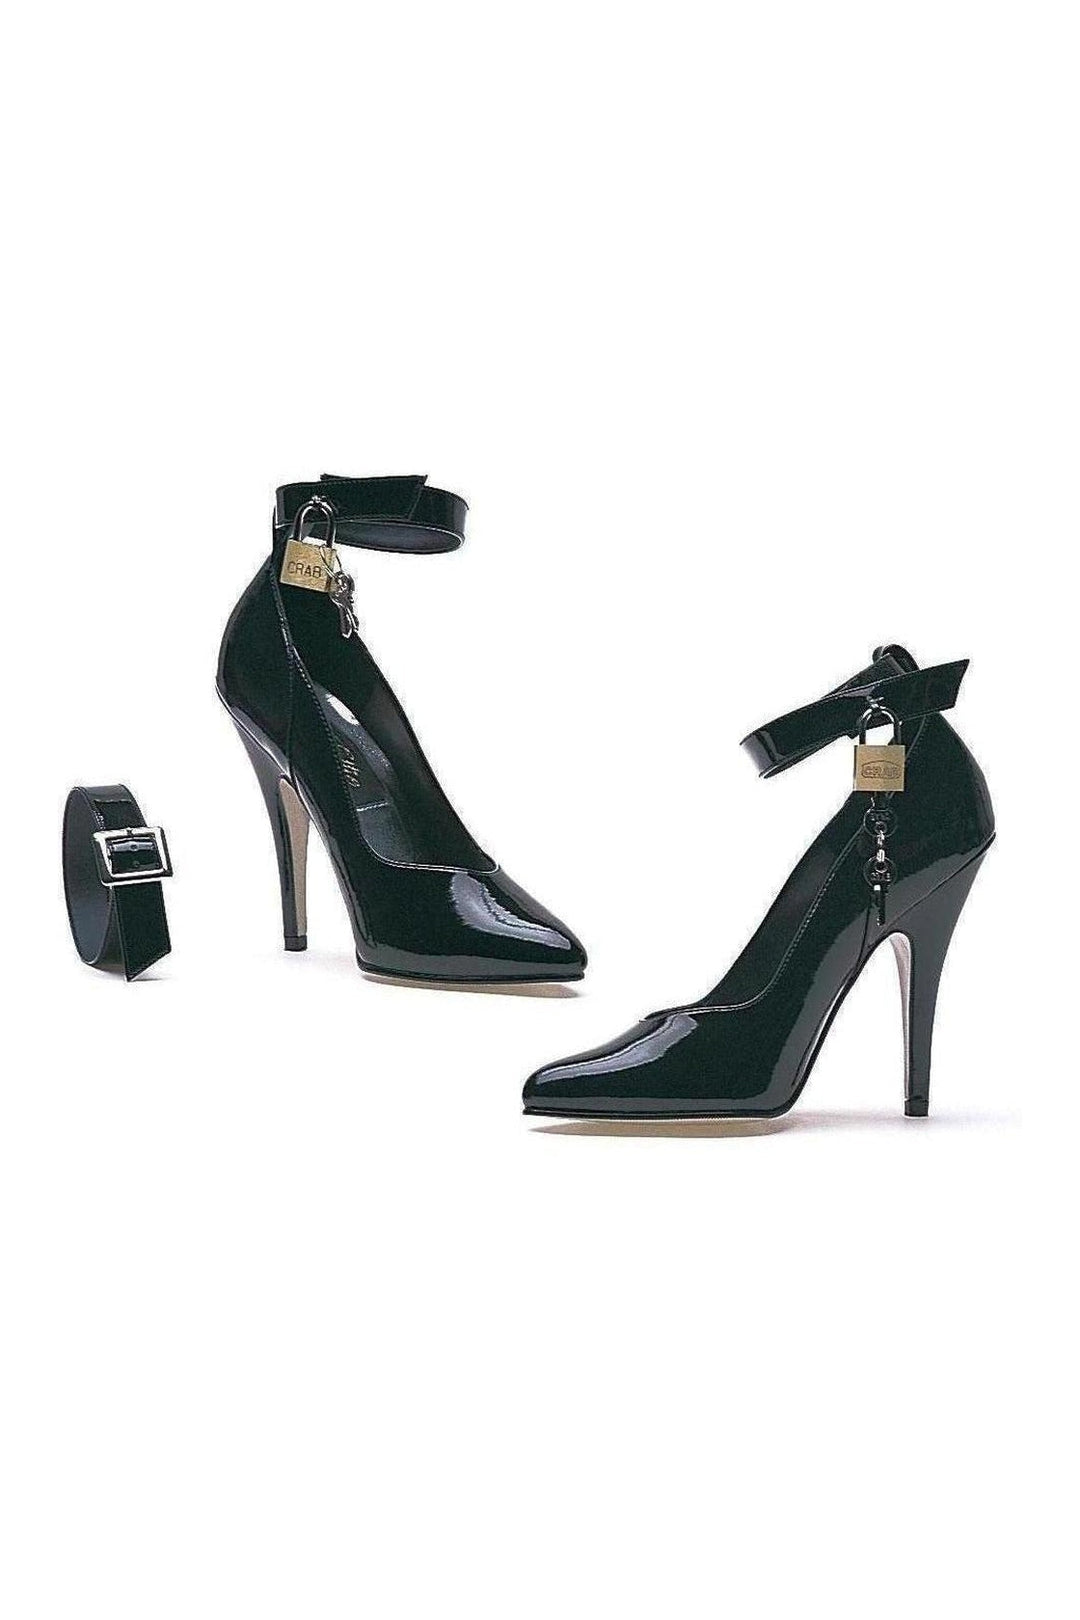 8227 Pump | Black Patent-Ellie Shoes-SEXYSHOES.COM